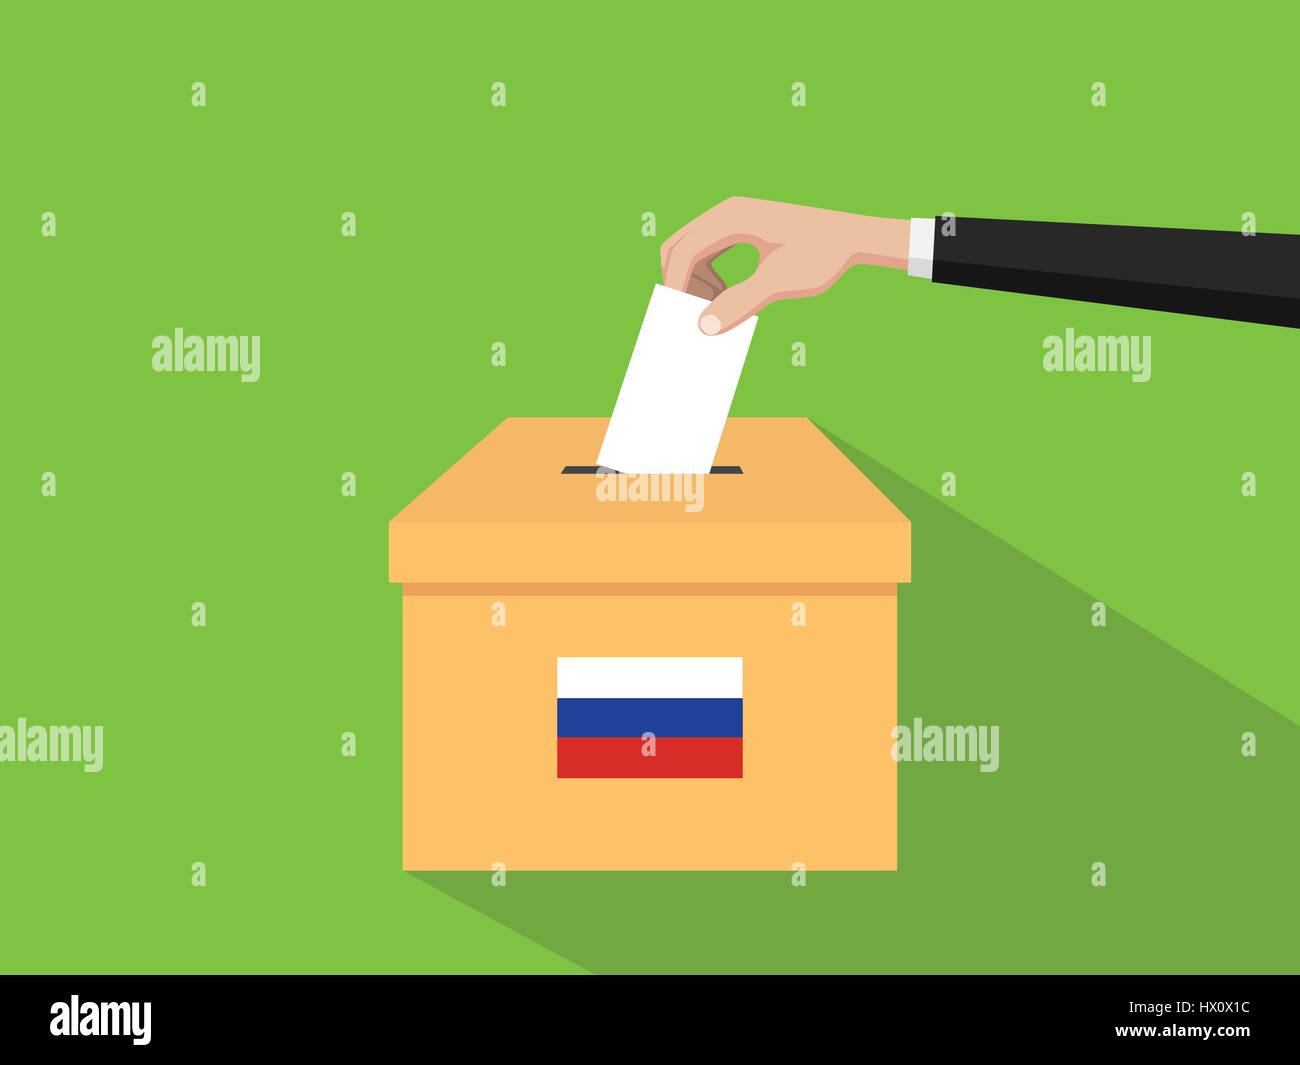 Russland Stimmen Wahl Konzept Illustration mit Menschen Wähler Hand gibt, die Stimmen Boxen Wahl mit lange flache Schatten einfügen Stock Vektor